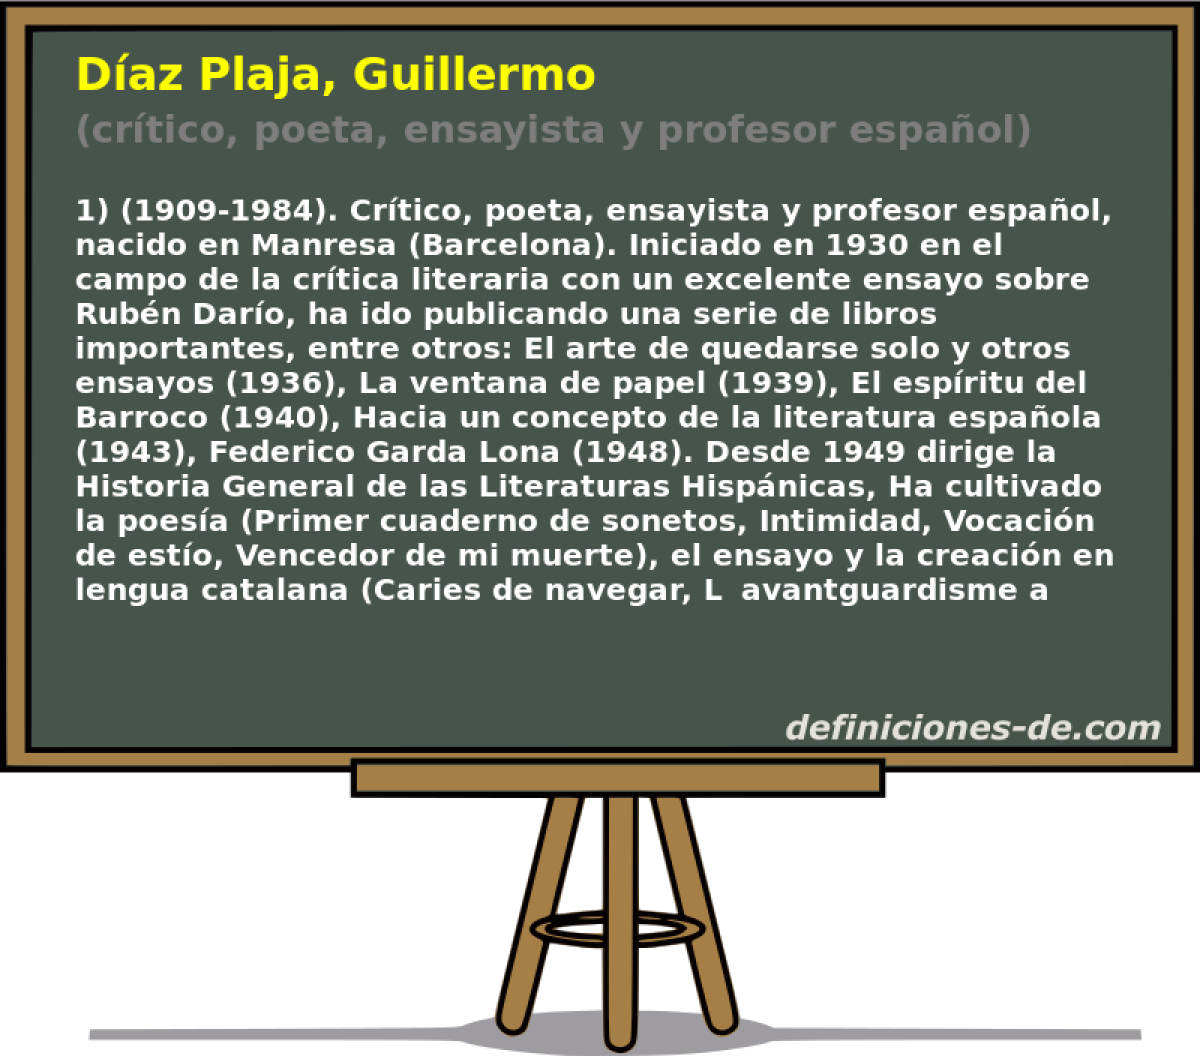 Daz Plaja, Guillermo (crtico, poeta, ensayista y profesor espaol)